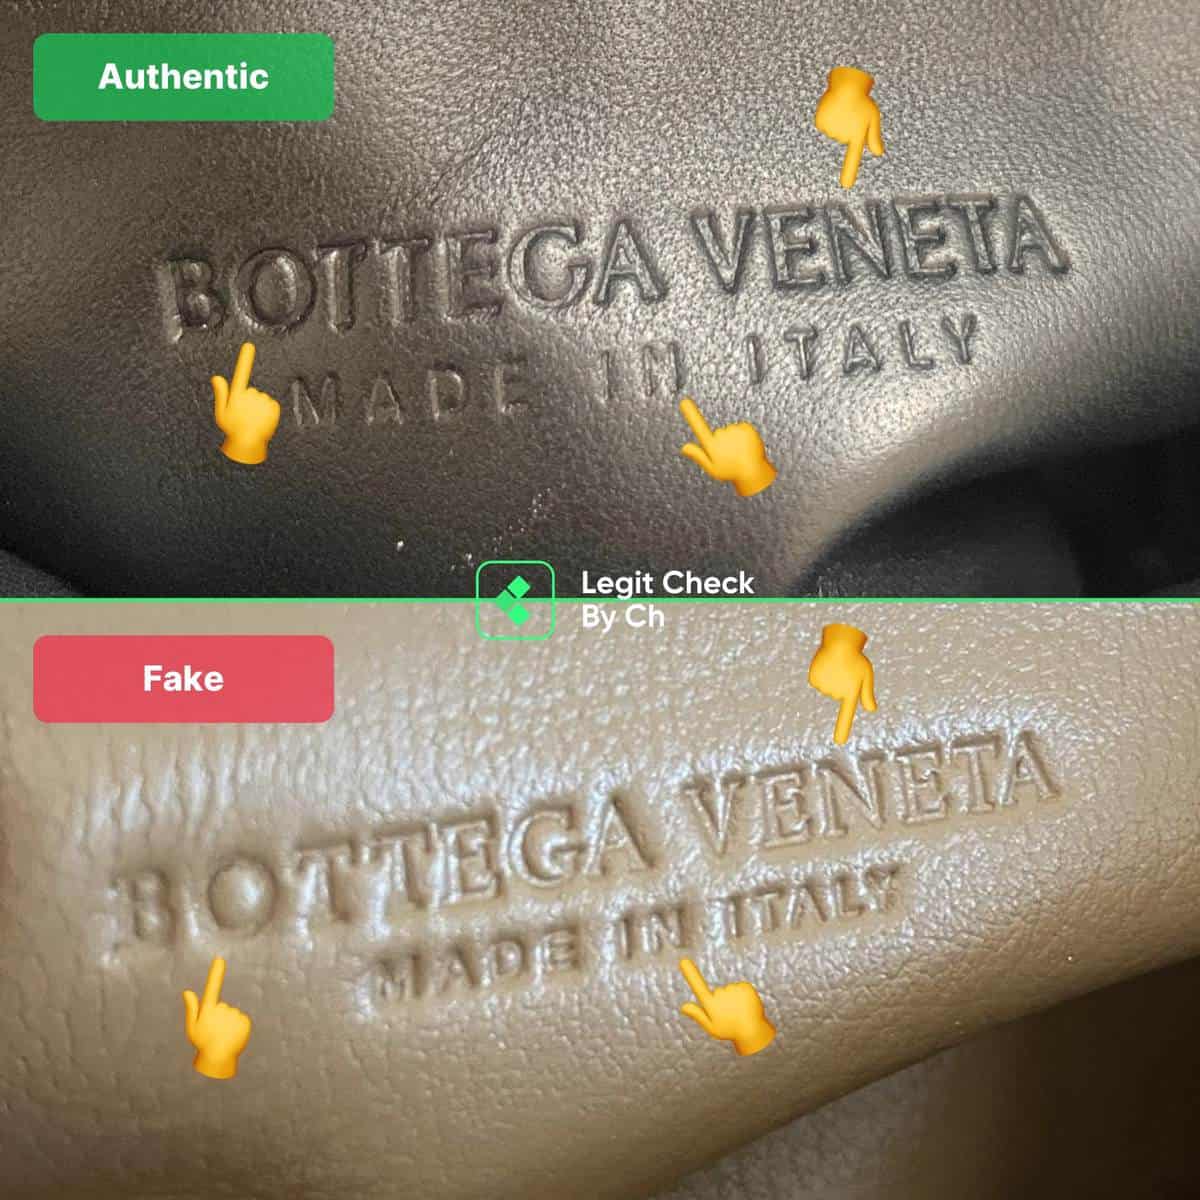 Bottega Veneta Handbag Authentication Guide - Learn more about BV bags